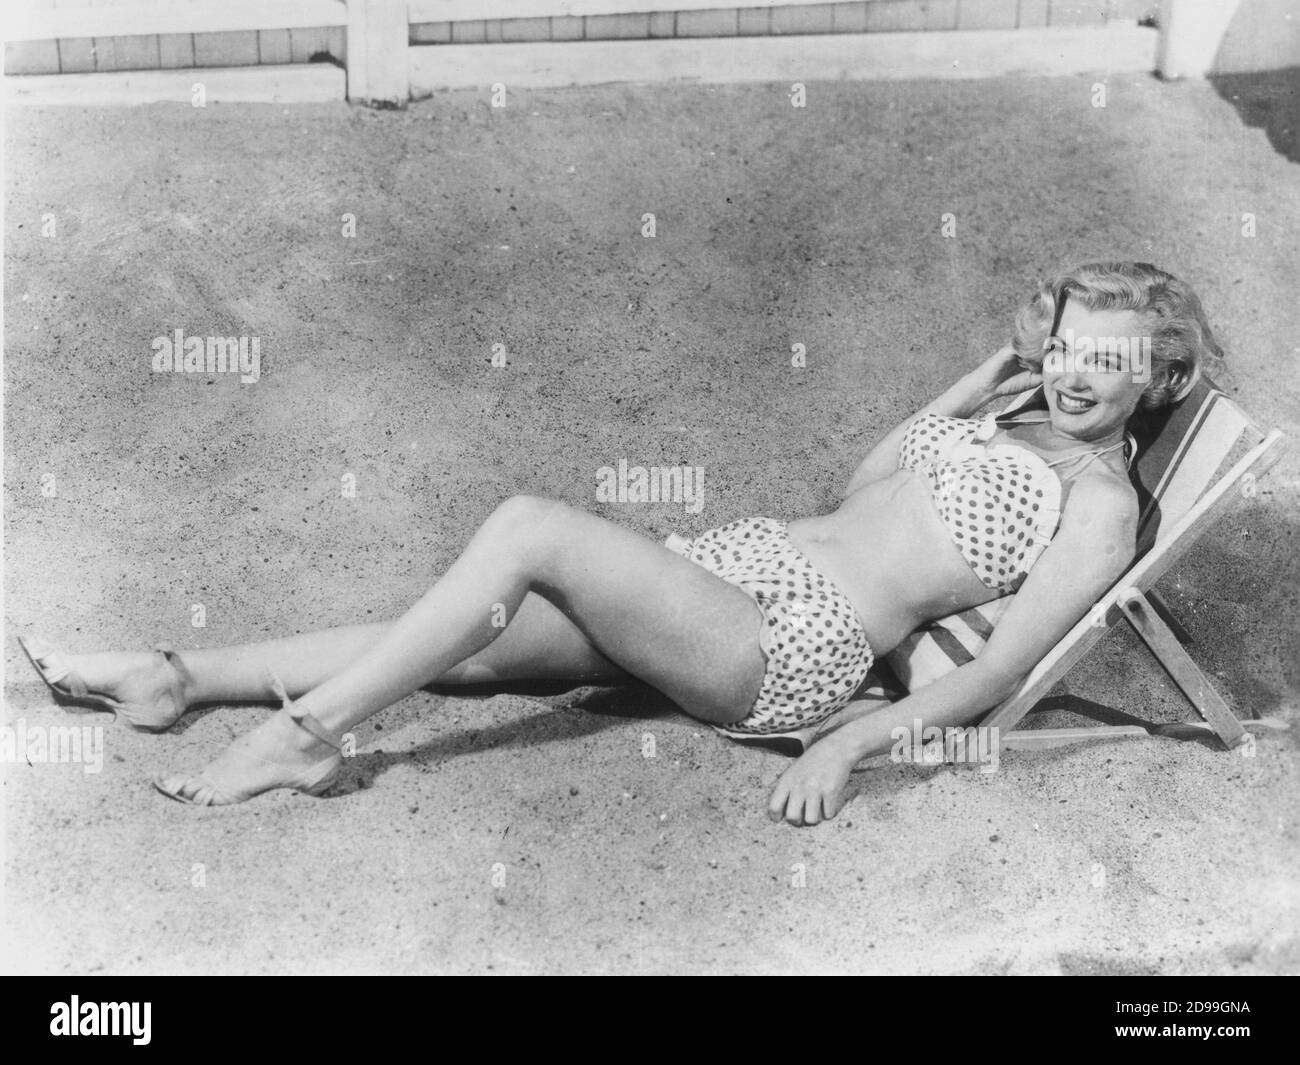 1951 :  MARILYN  MONROE , 20Th Century Fox pubblicity still  - BIKINI - SWIM SUIT - COSTUME DA BAGNO - POIS - POLKA DOT - PIN UP - SPIAGGIA - BEACH ----   Archivio GBB Stock Photo